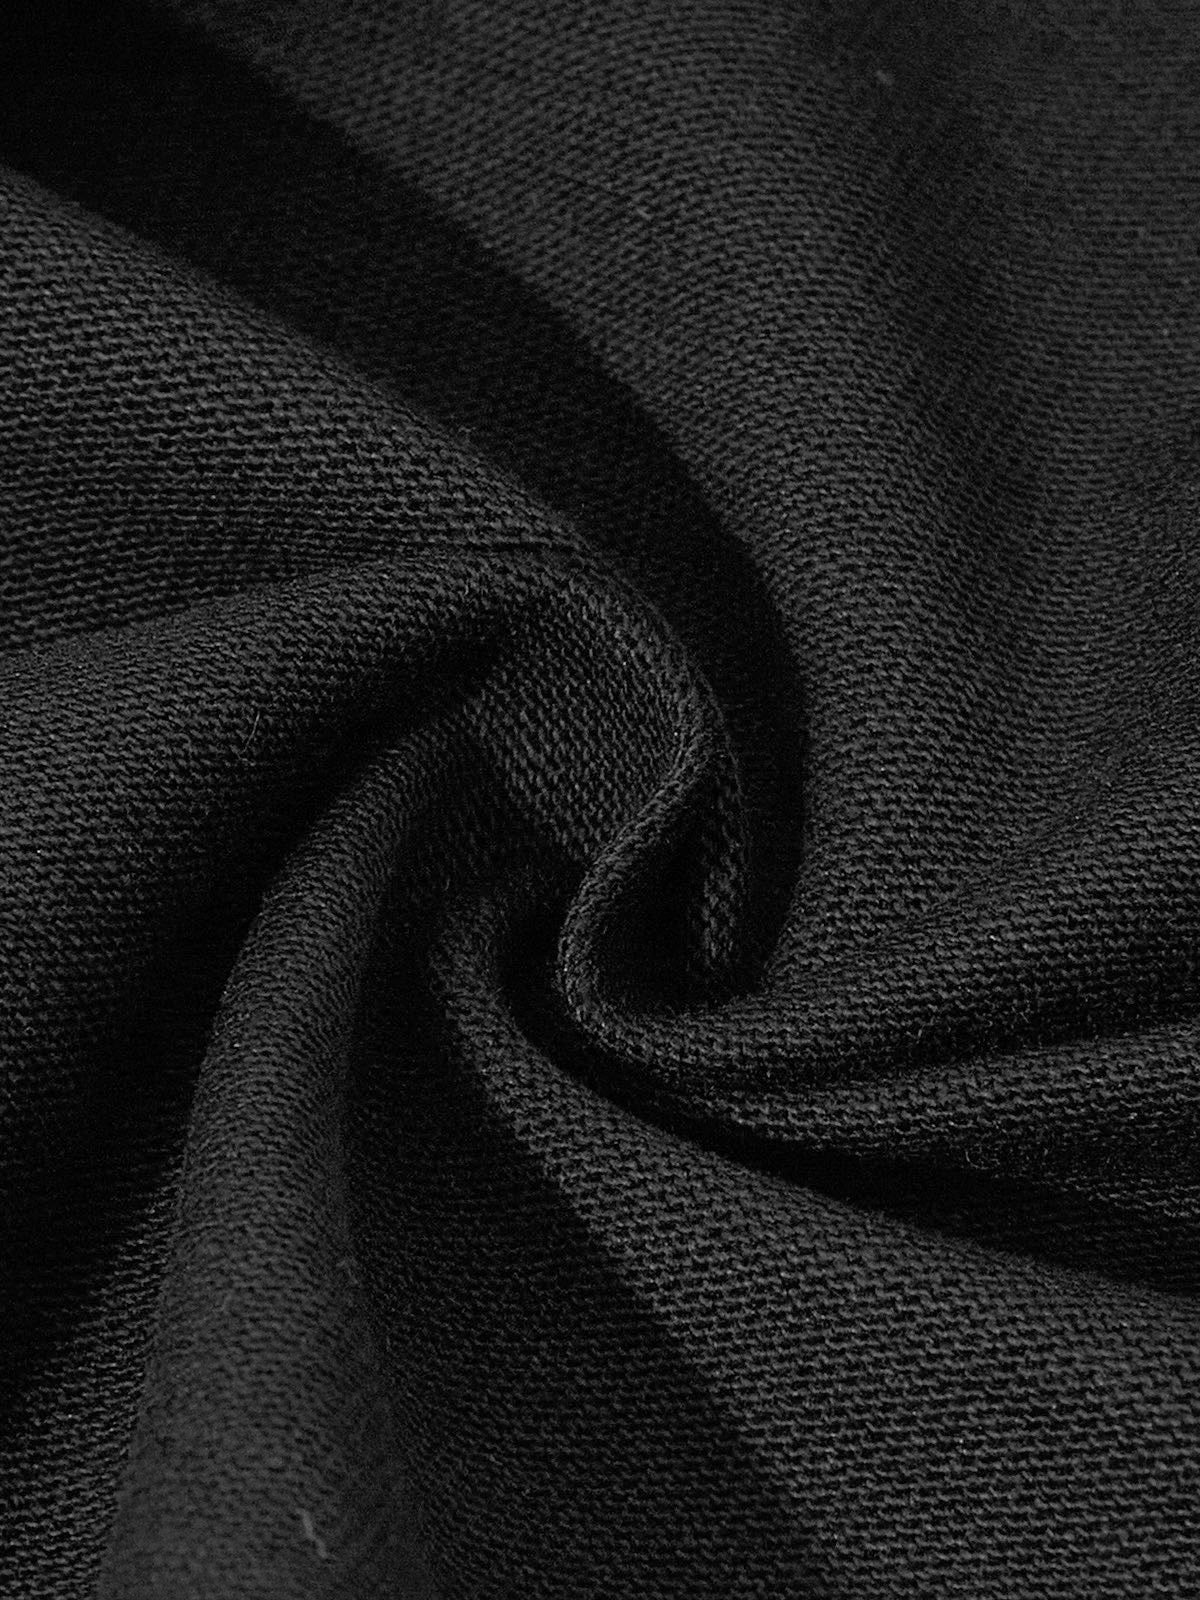 UNKNOWN ALLURE© ブラック マドンナ 430g ヴィンテージ ウォッシュ クルーネック スウェットシャツ